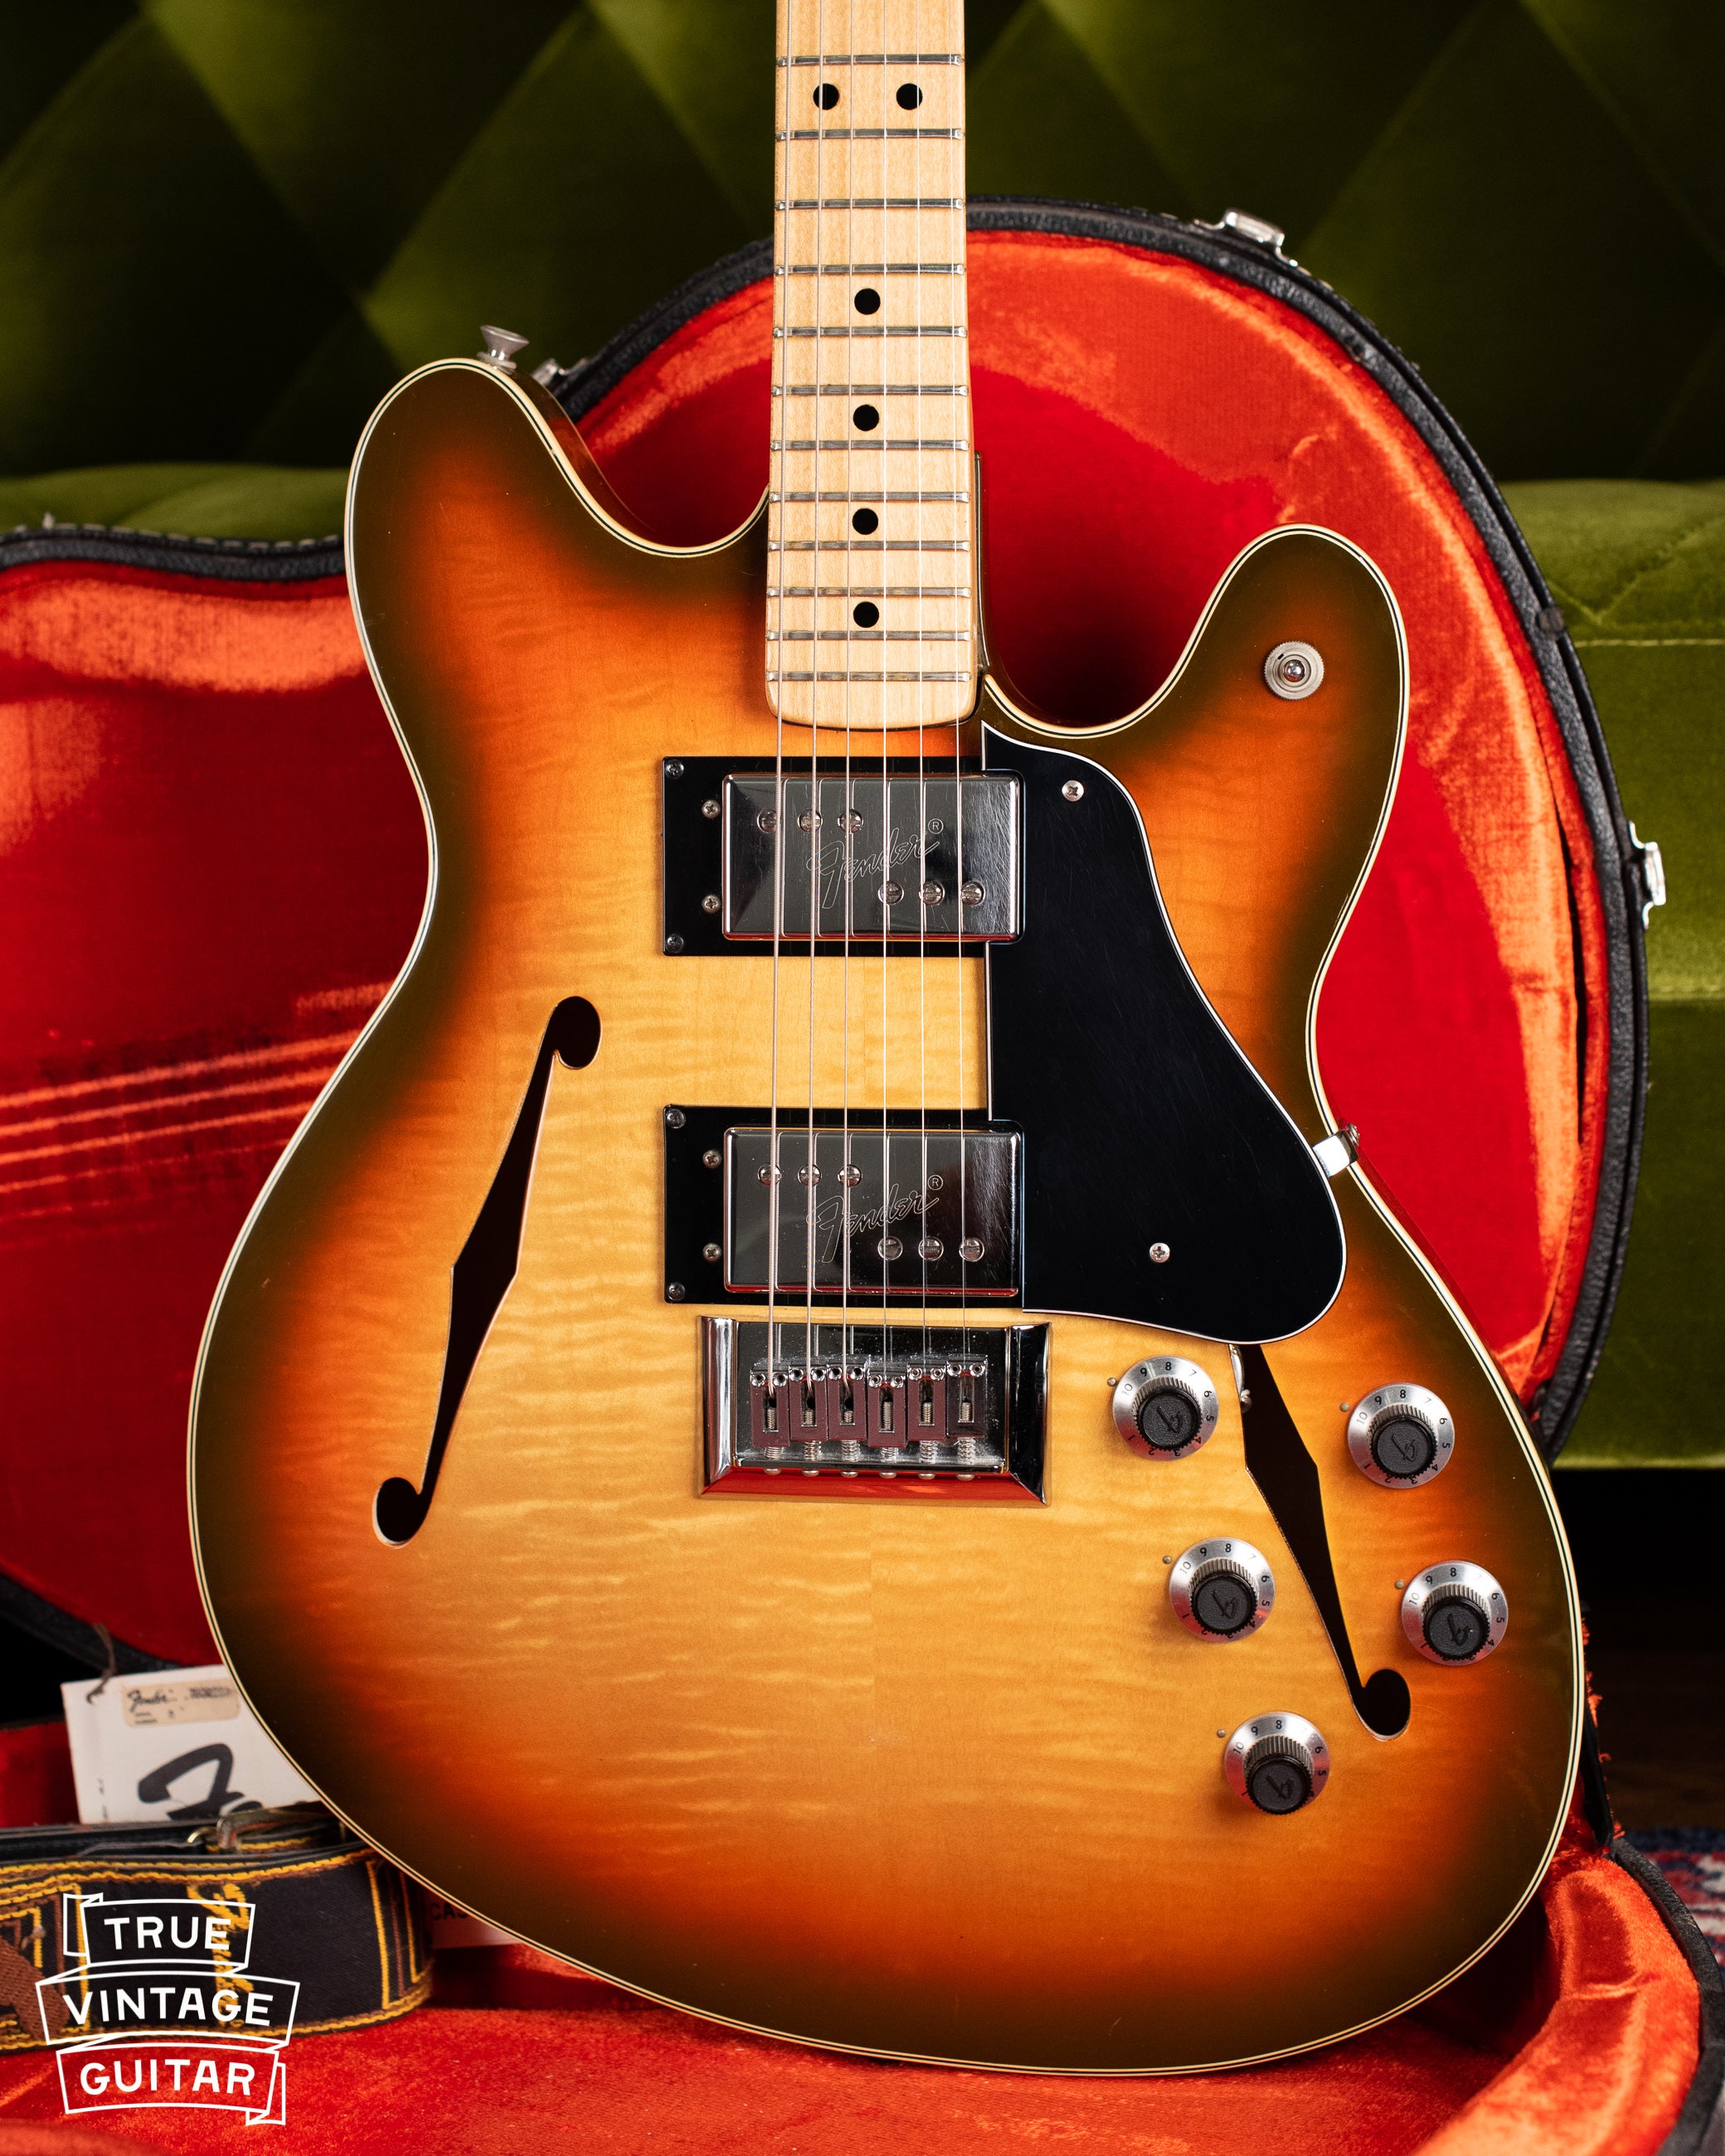 1976 Fender Starcaster vintage electric guitar